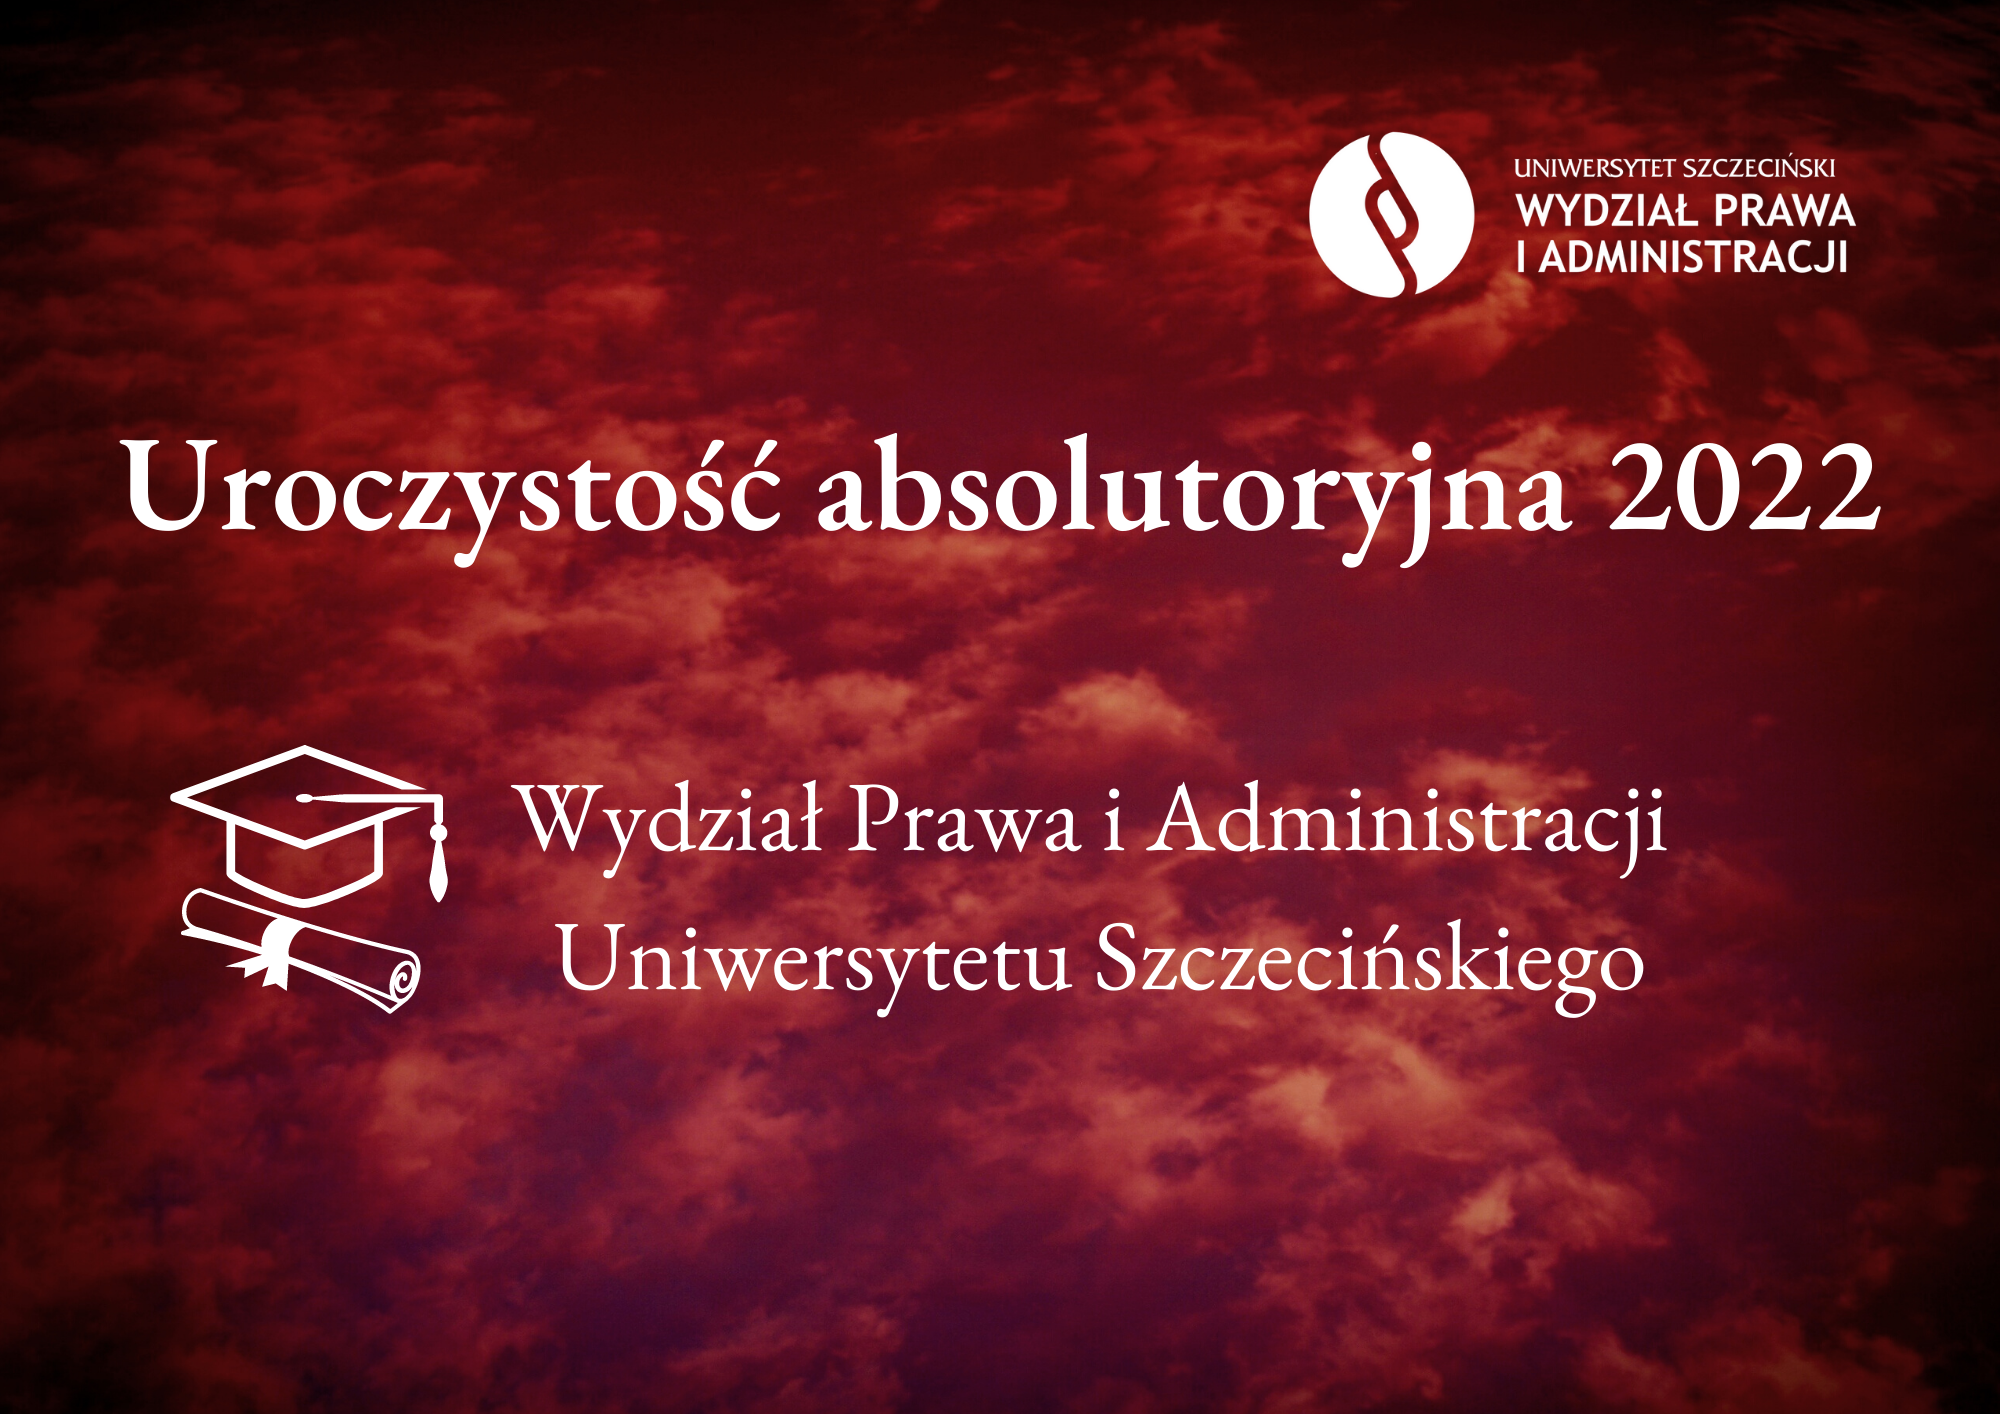 Uroczystość absolutoryjna 2022 na Wydziale Prawa i Administracji Uniwersytetu Szczecińskiego